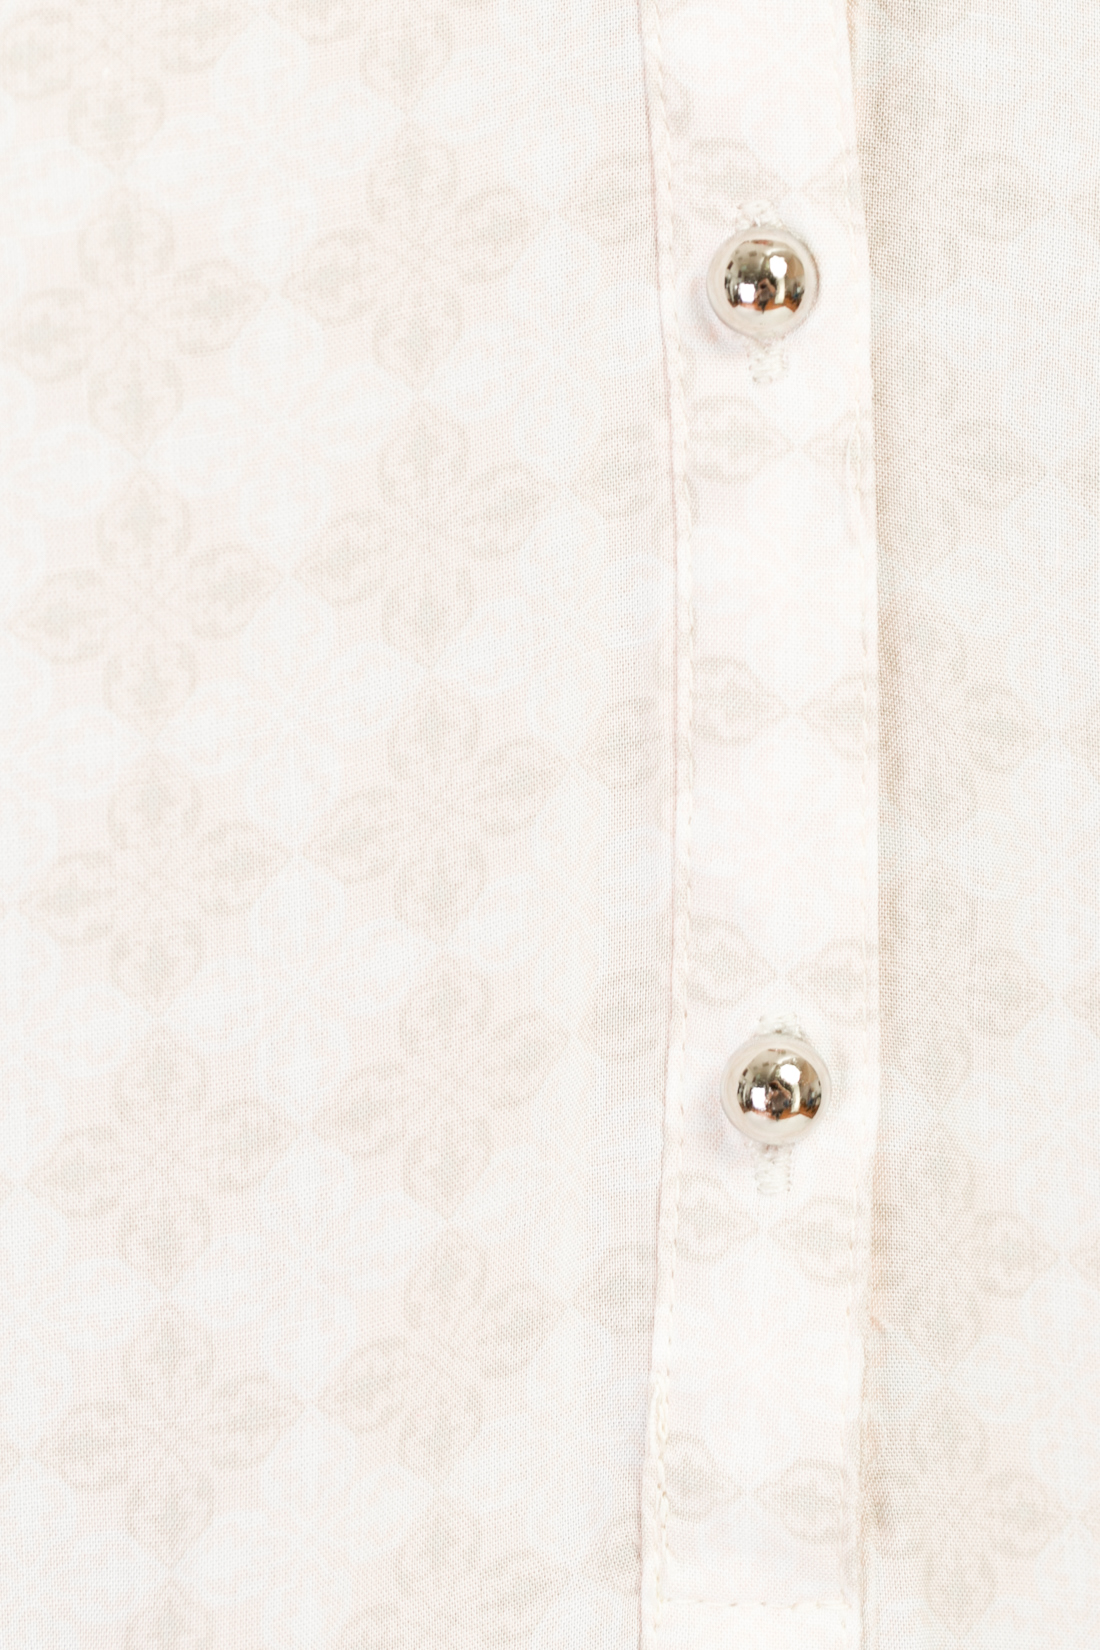 Блузка с пастельным орнаментом (арт. baon B177043), размер XXL, цвет белый Блузка с пастельным орнаментом (арт. baon B177043) - фото 3